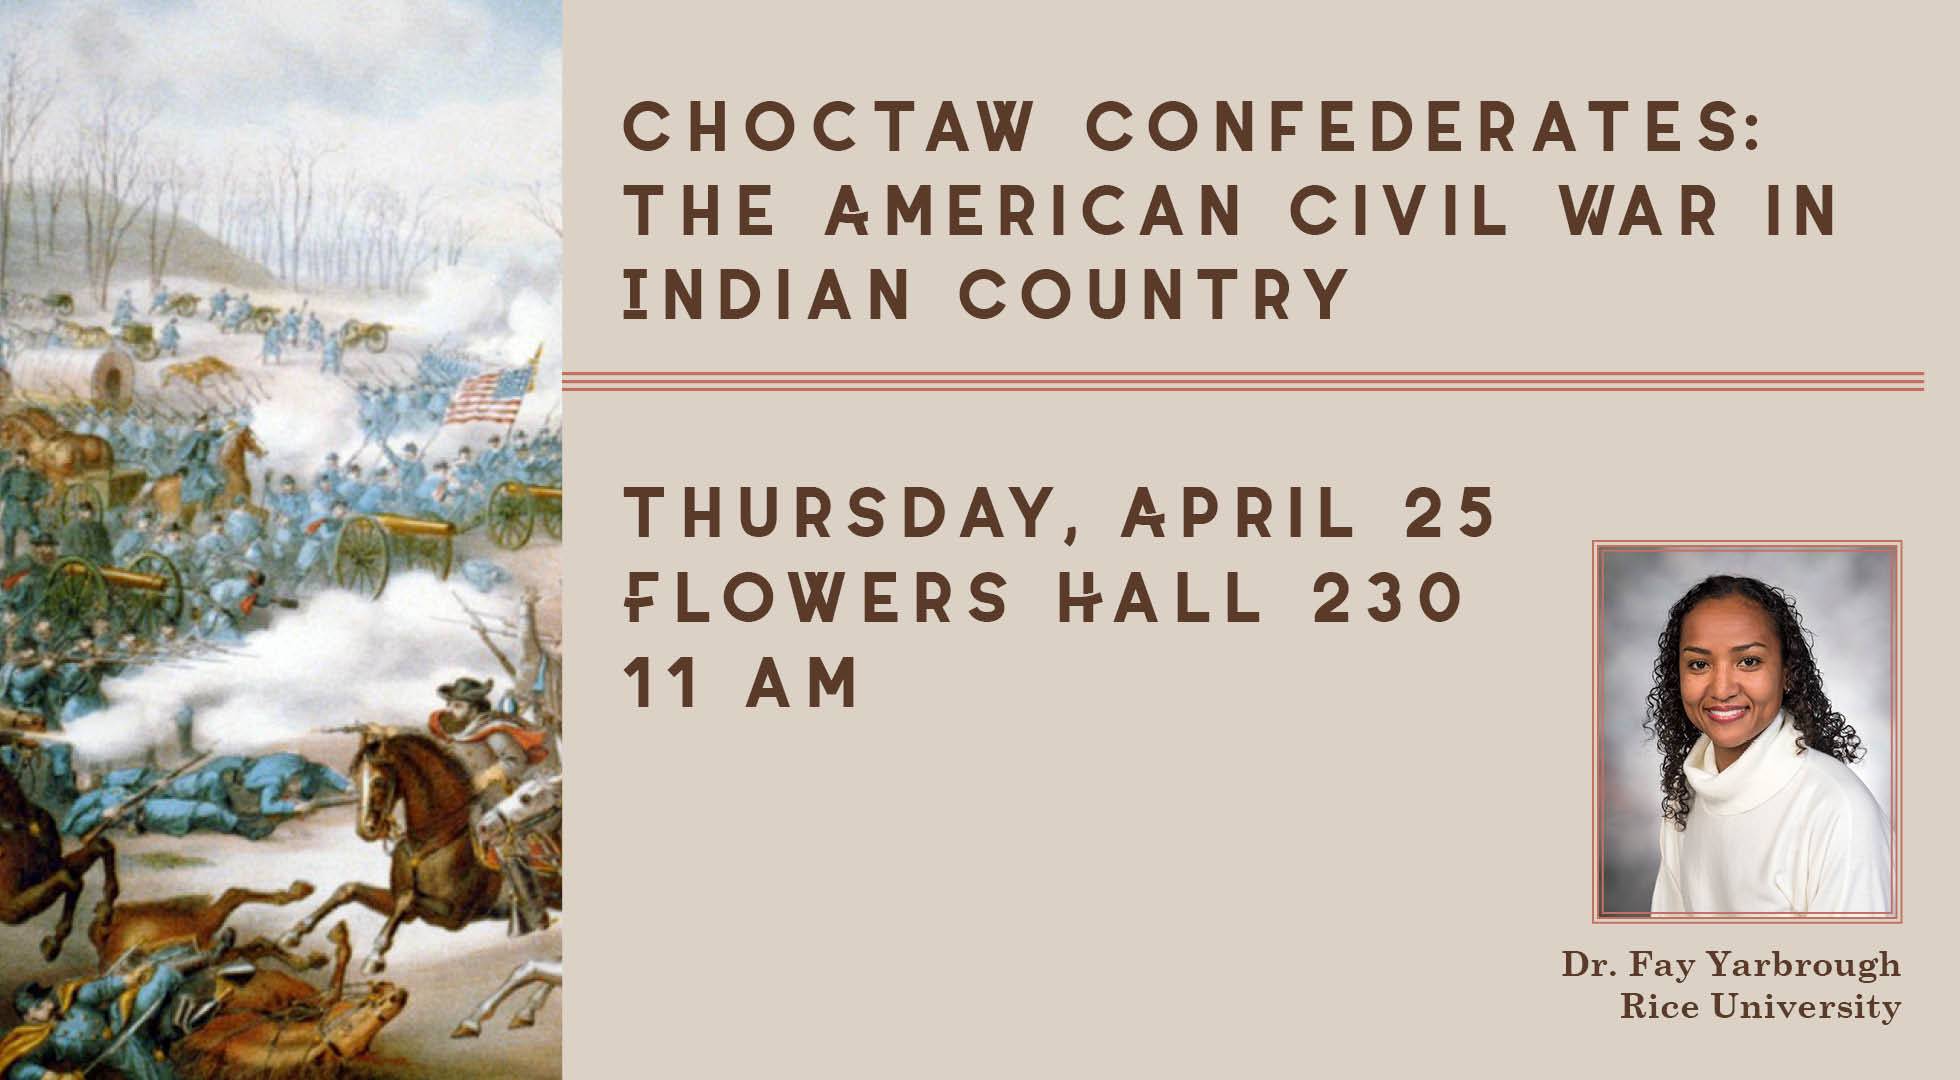 Choctaw Confederates, event image